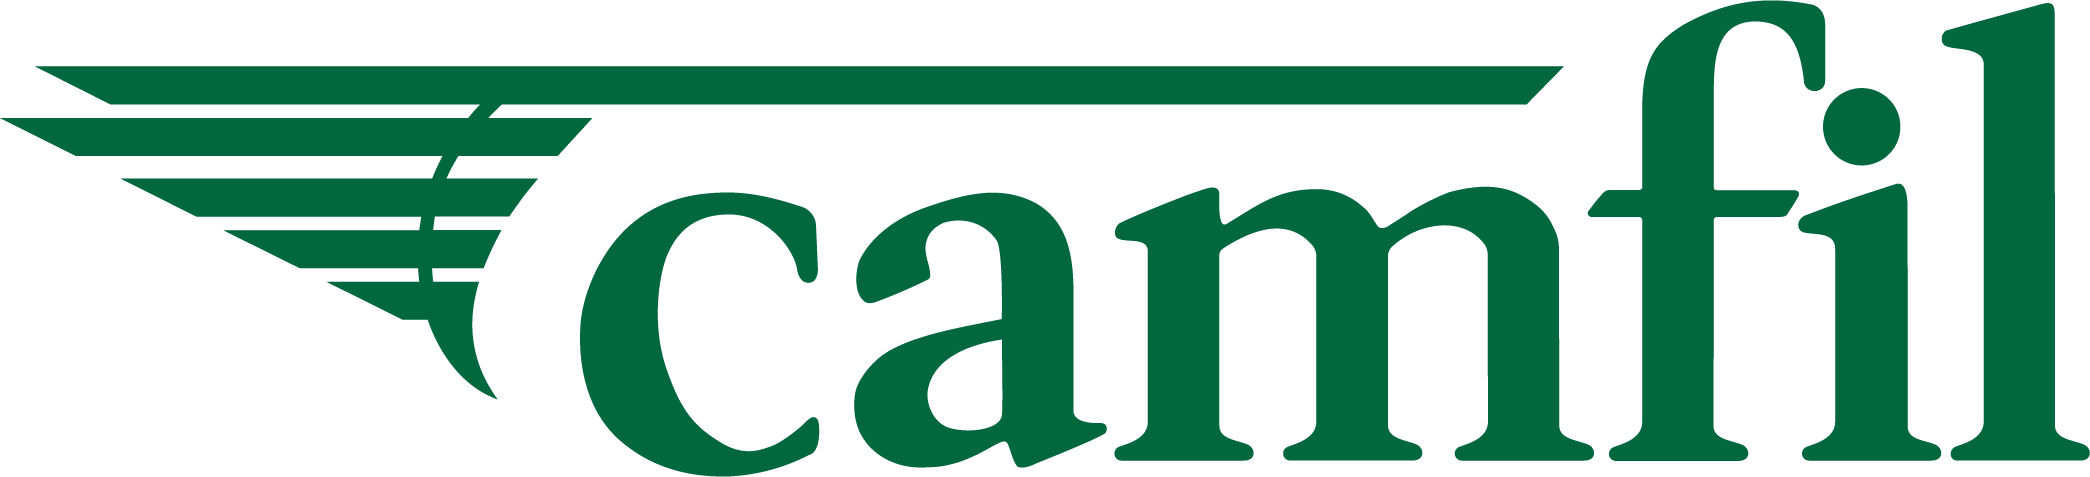 Camfill logo